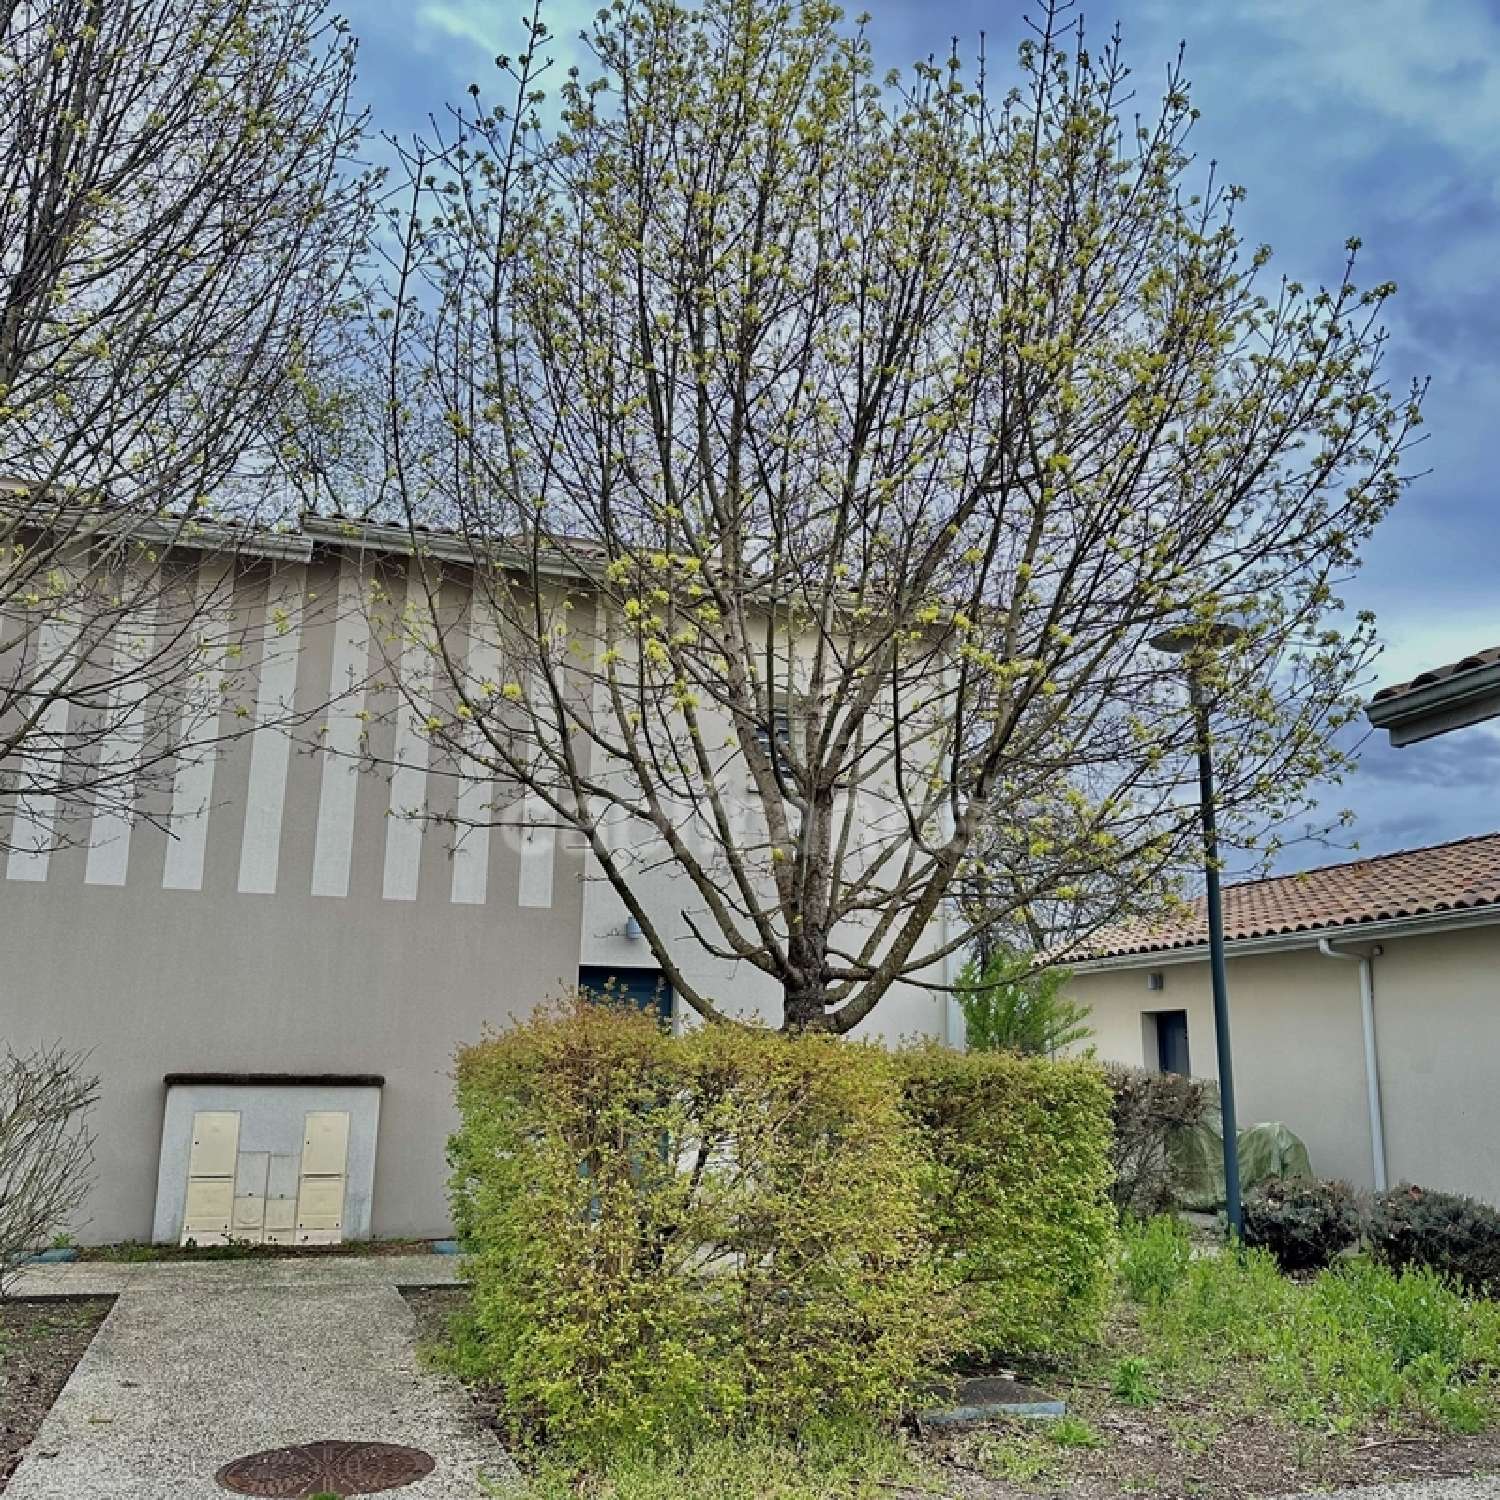  à vendre maison Biganos Gironde 4